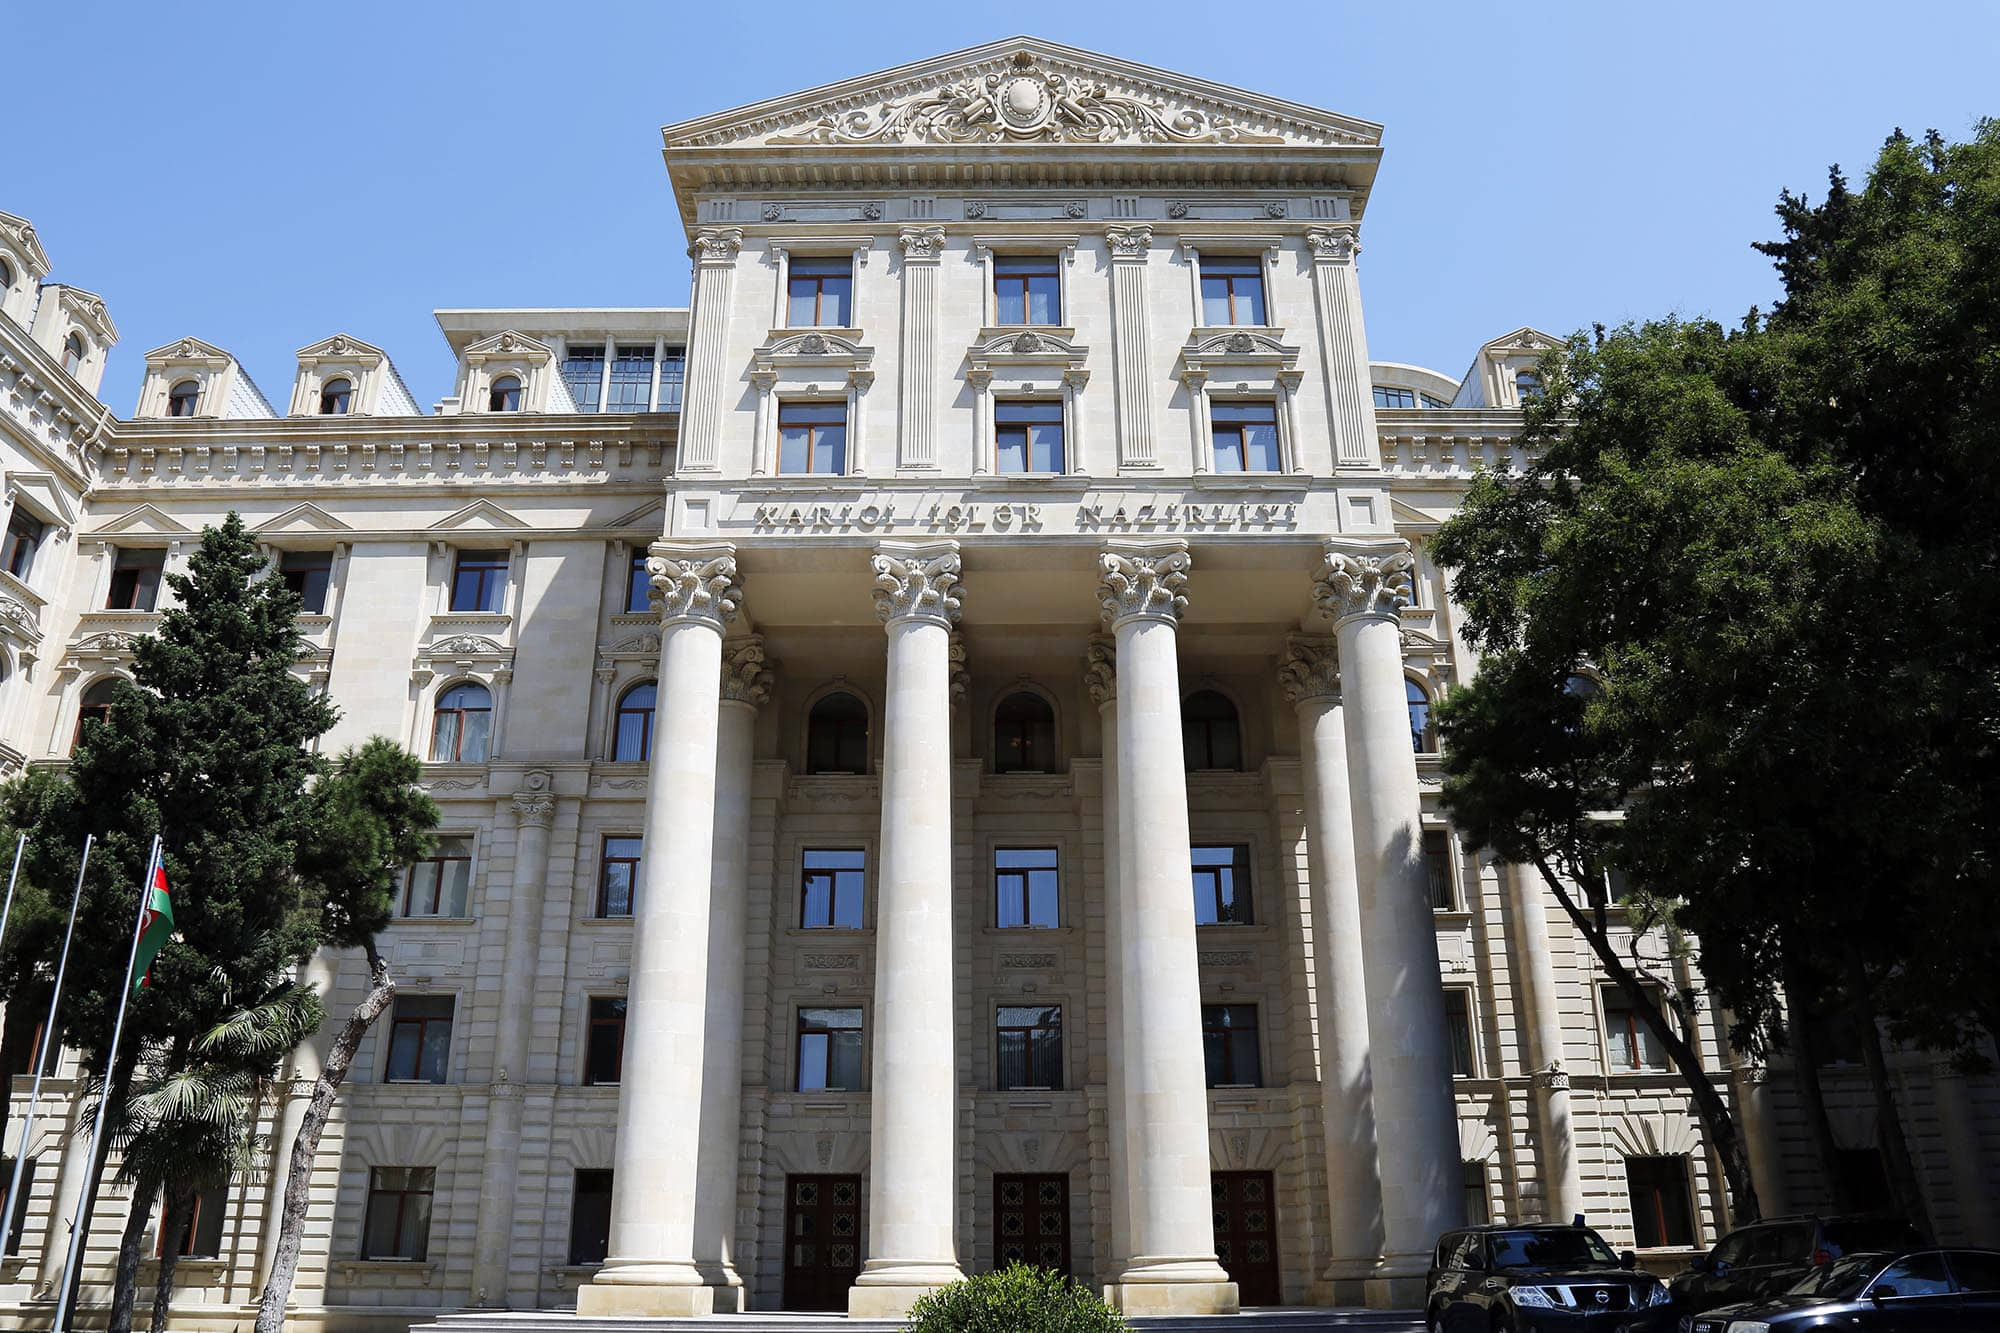 Ադրբեջանի ԱԳՆ-ն մեղադրանքներ է հնչեցրել ՀՀ-ի հասցեին և պատասխանել  Արմեն Գրիգորյանի հայտարարություններին